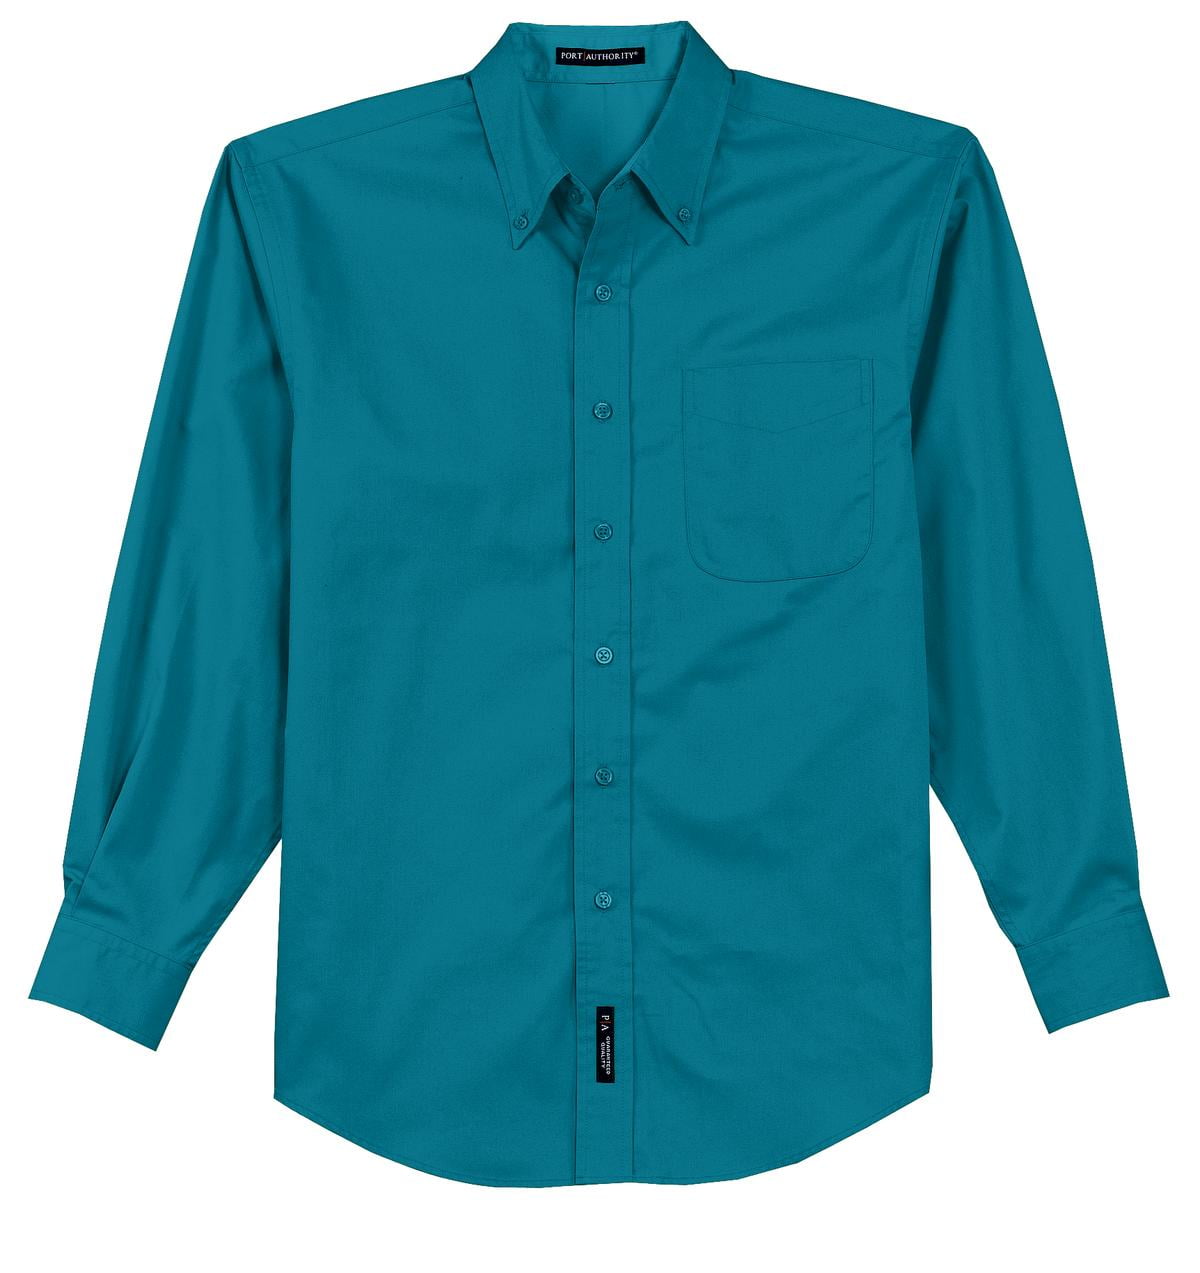 Taeko Cotton Jersey Full Sleeves Goal Printed T-Shirt & Lounge Pant Set -  Green & Blue